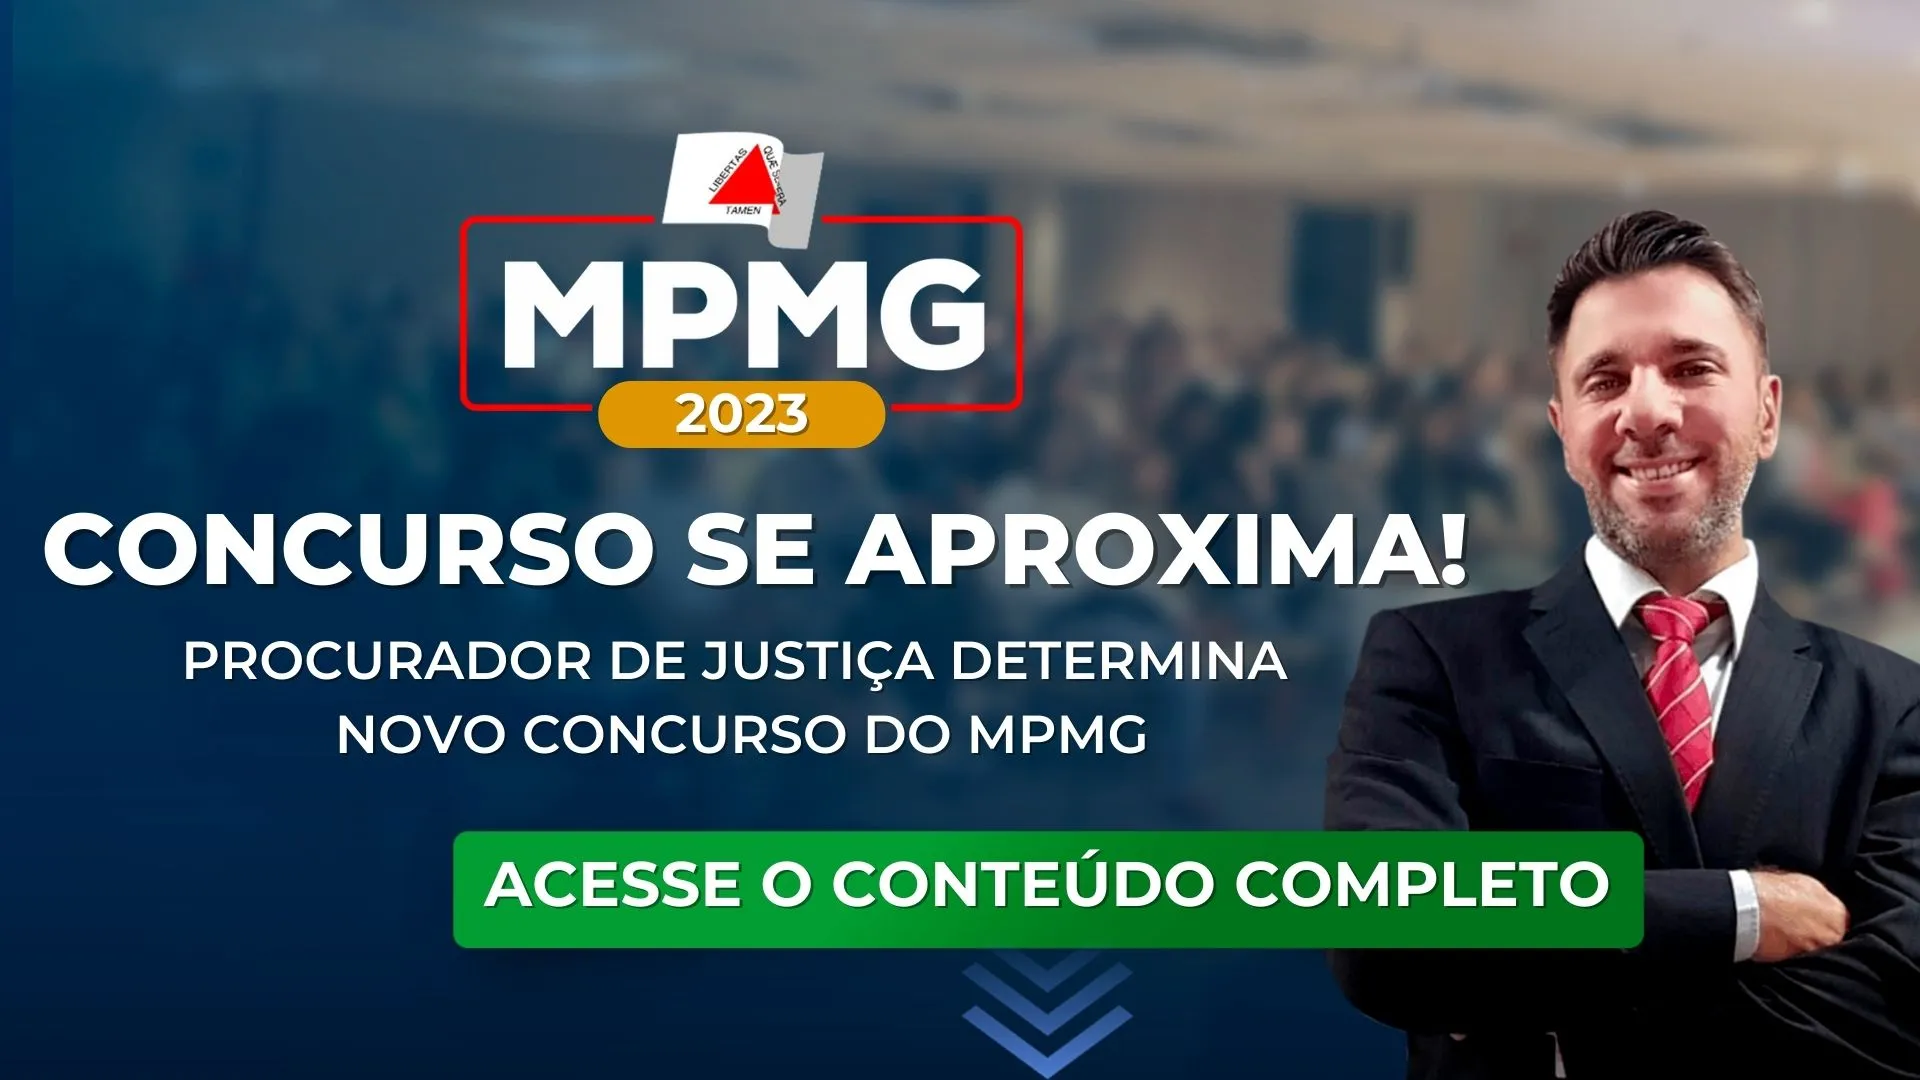 MPMG: Procurador de Justiça determina novo concurso do MPMG